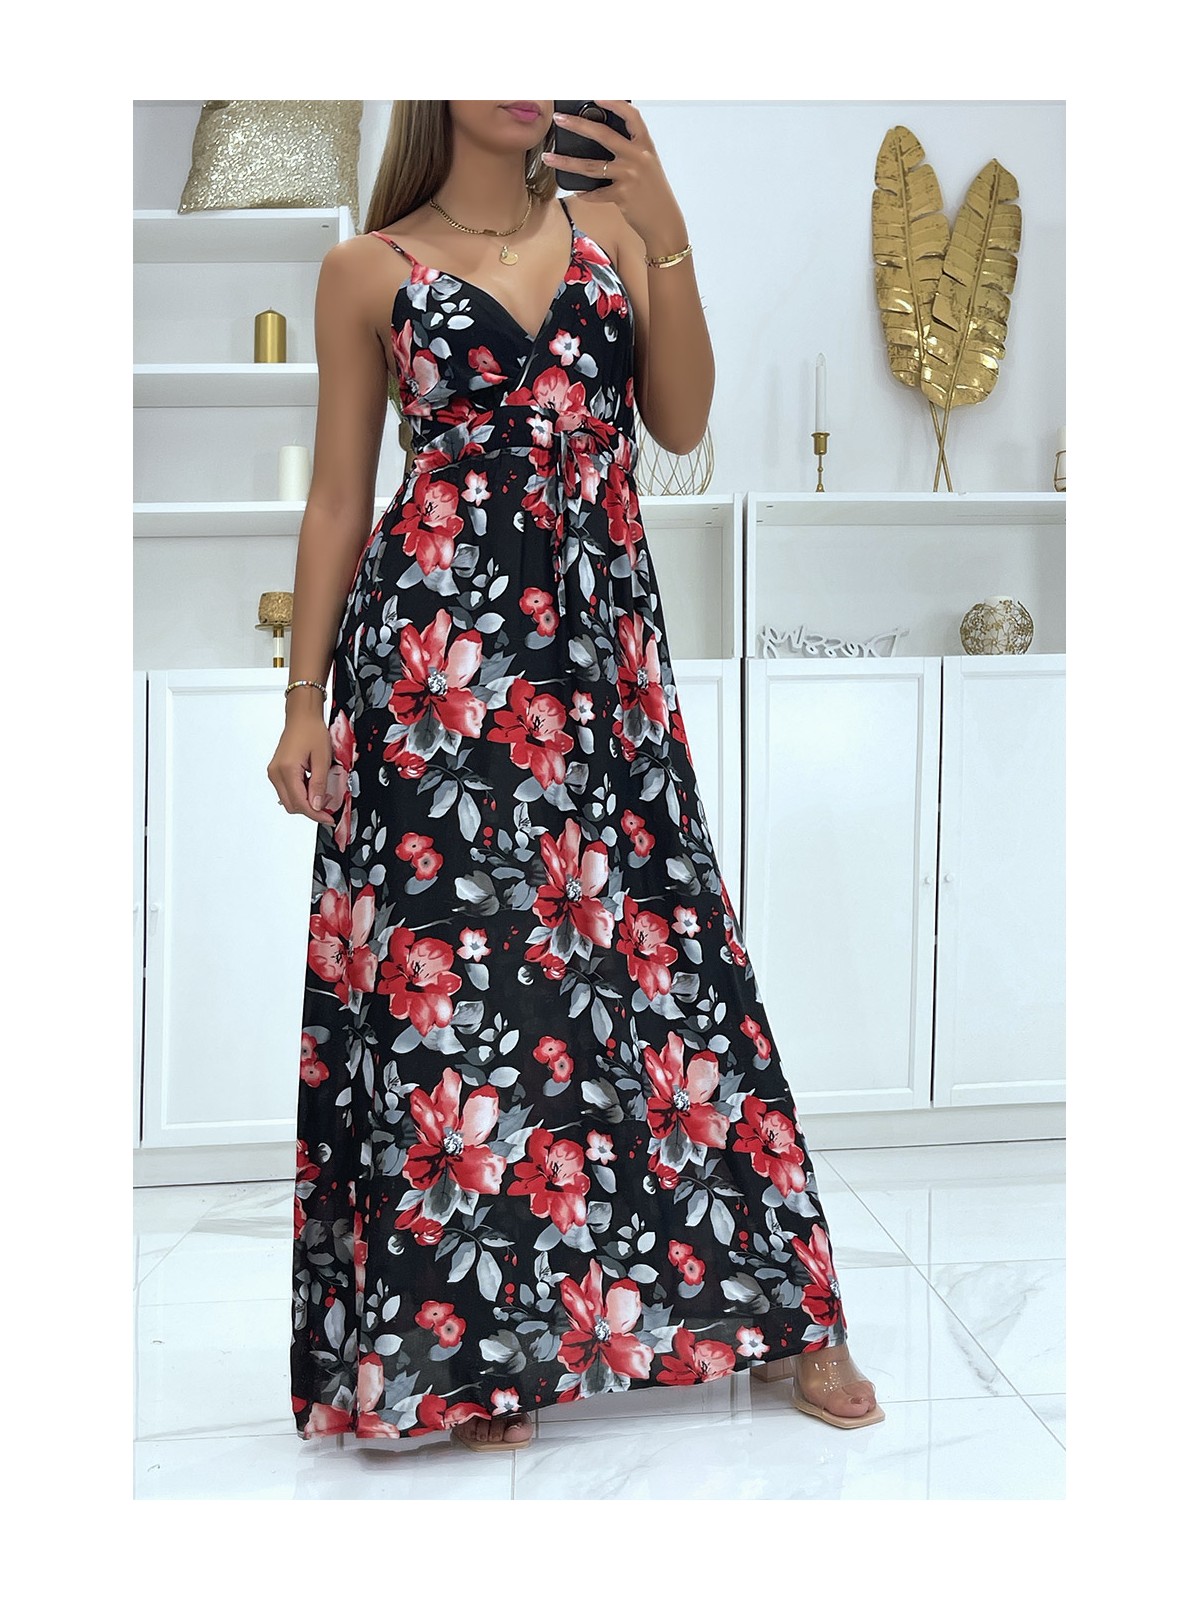 Longue robe croisé motif fleuris noir avec bretelle amovible - 2